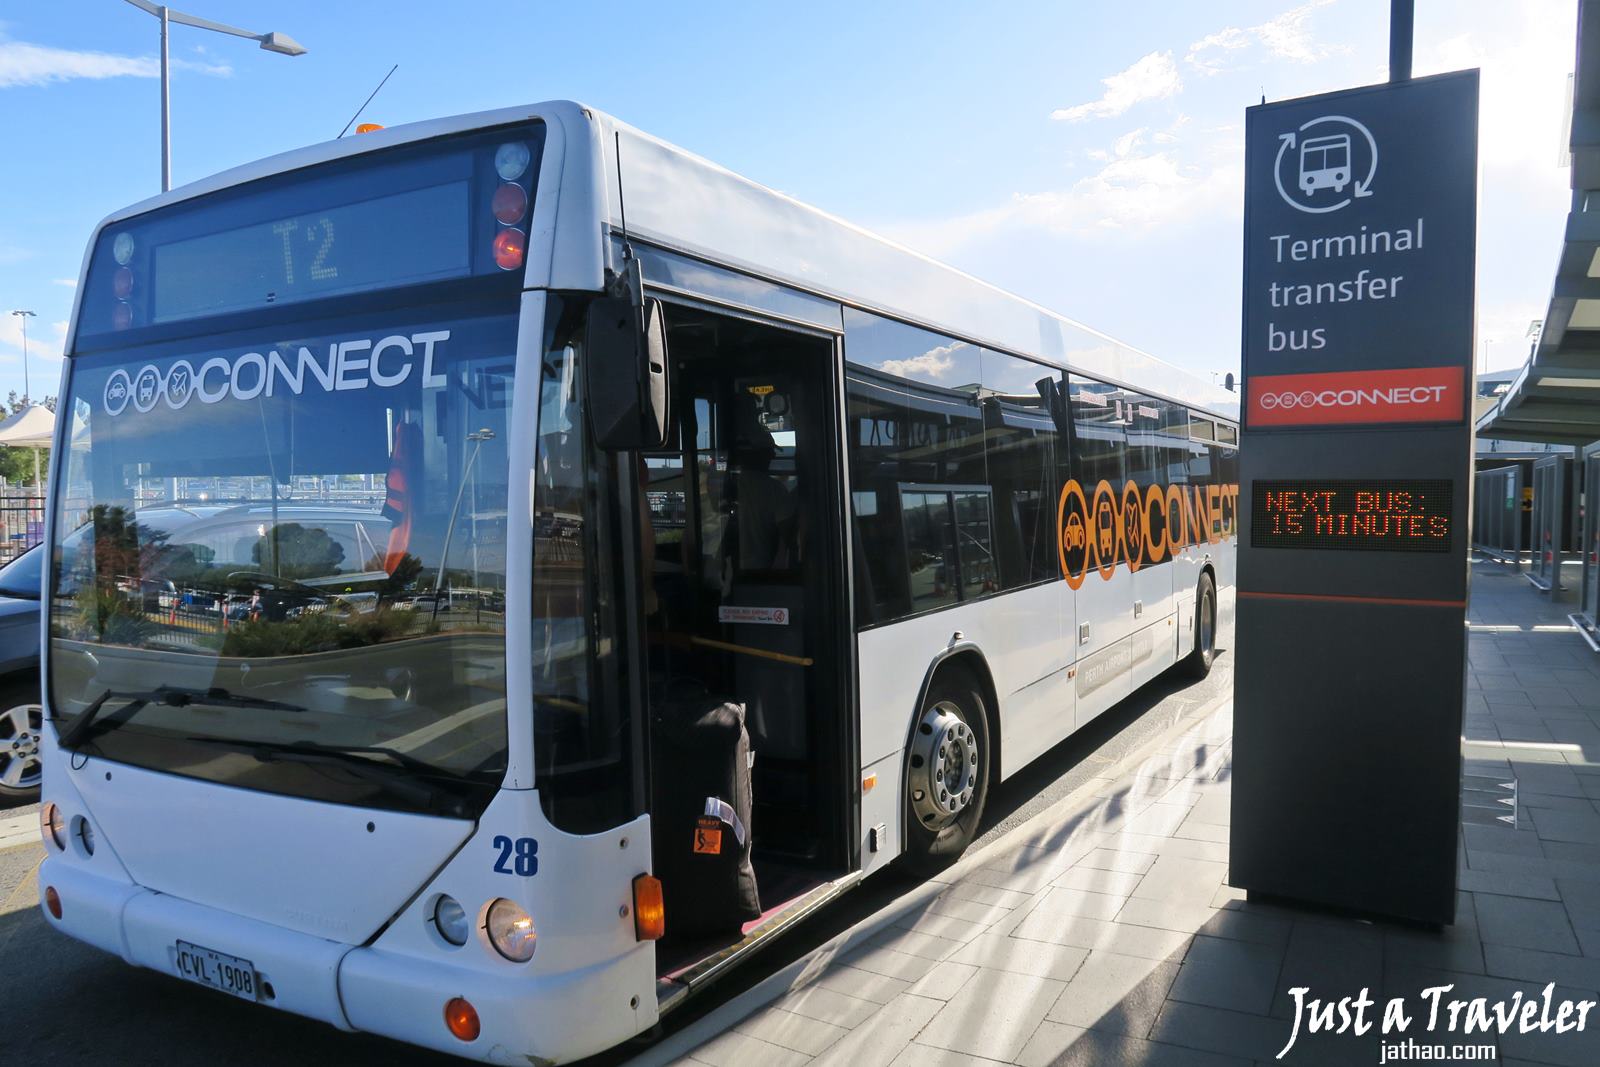 伯斯-交通-巴士-公車-機場-航廈循環-Shuttle-市區-票價-時刻表-搭乘-攻略-費用-便宜-省錢-自由行-旅遊-澳洲-Perth-City-Airport-Transport-Bus